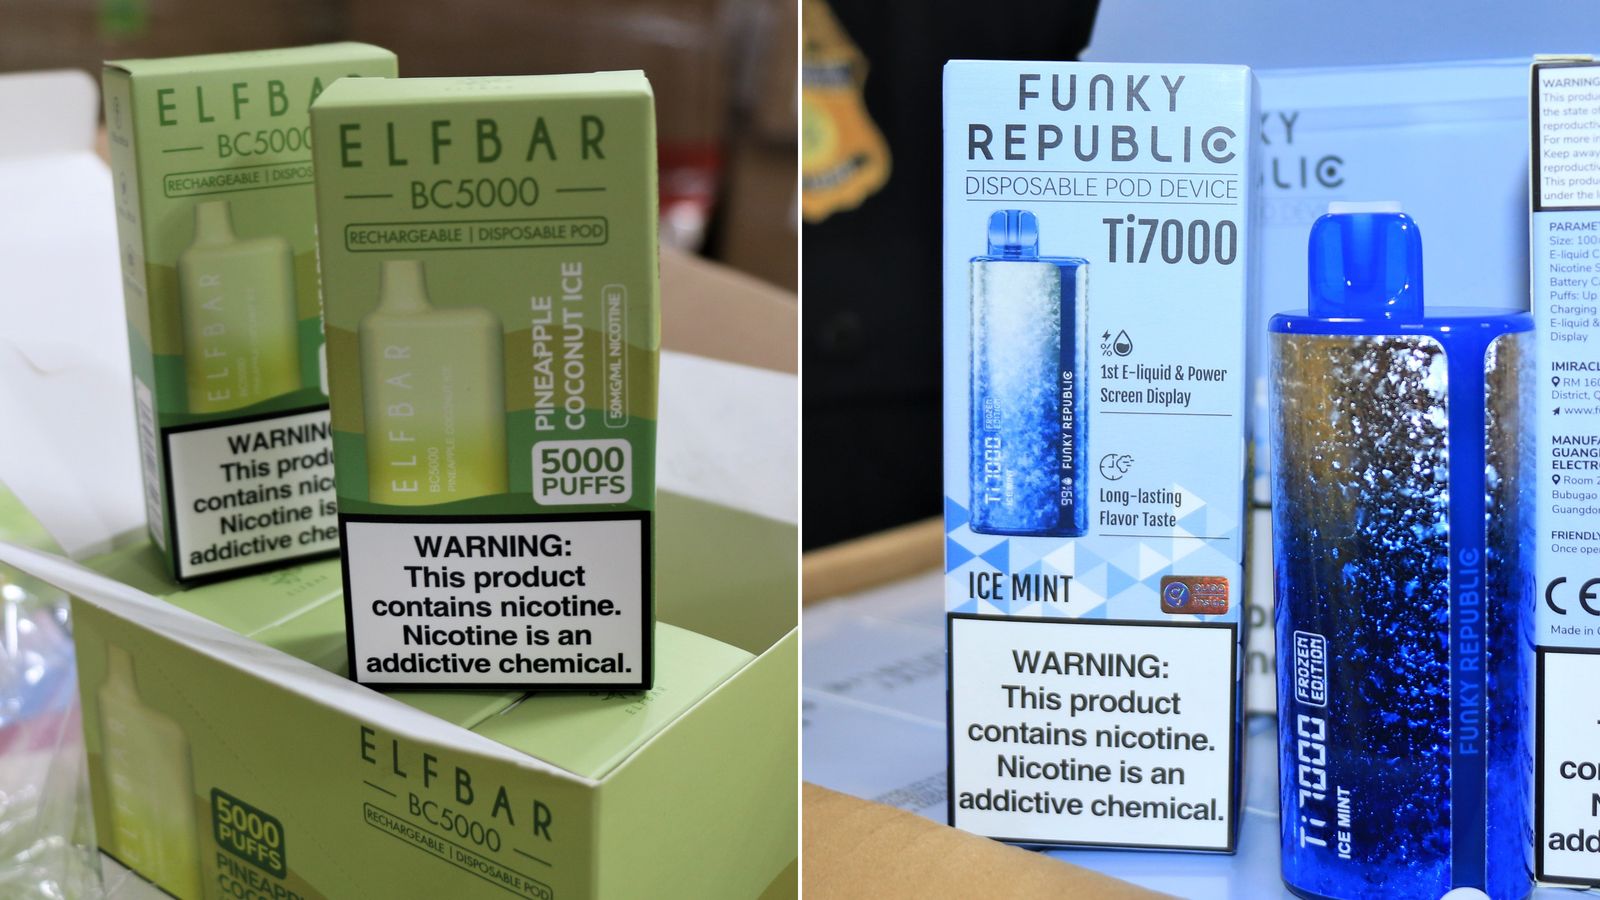 Sigarette elettroniche usa e getta di contrabbando, allarme negli Usa:  Elfbar lancia servizio anti-fake